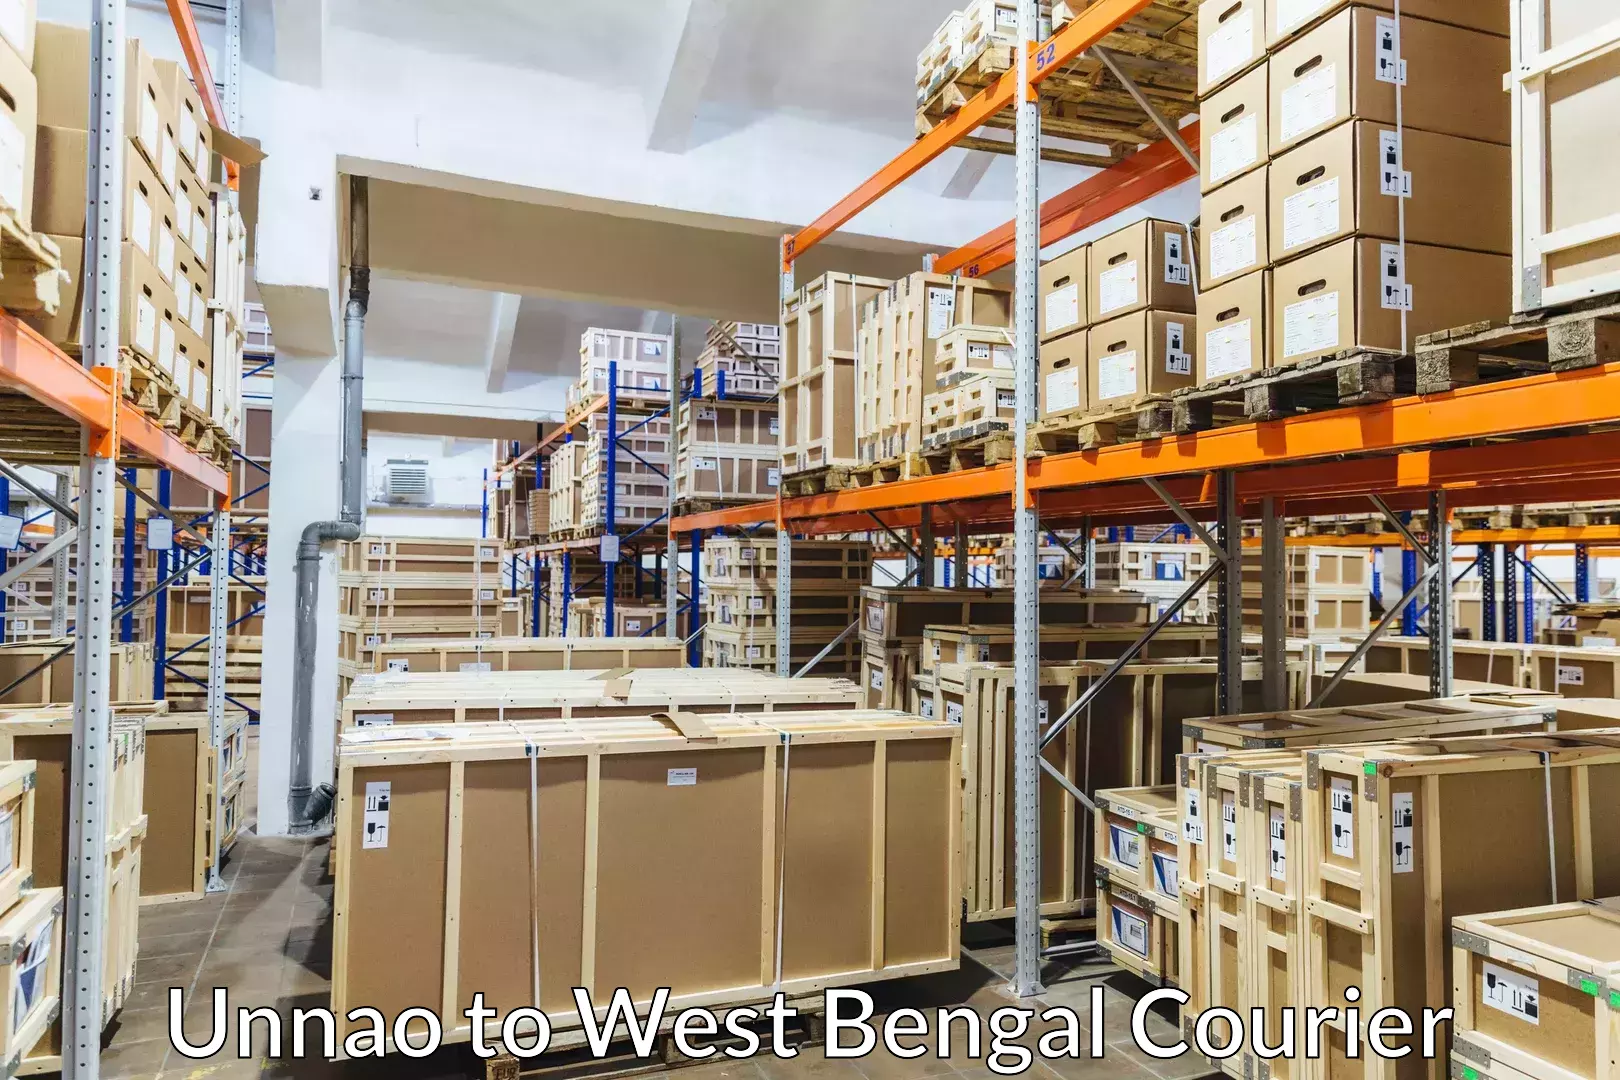 Luggage delivery network Unnao to Calcutta University Kolkata